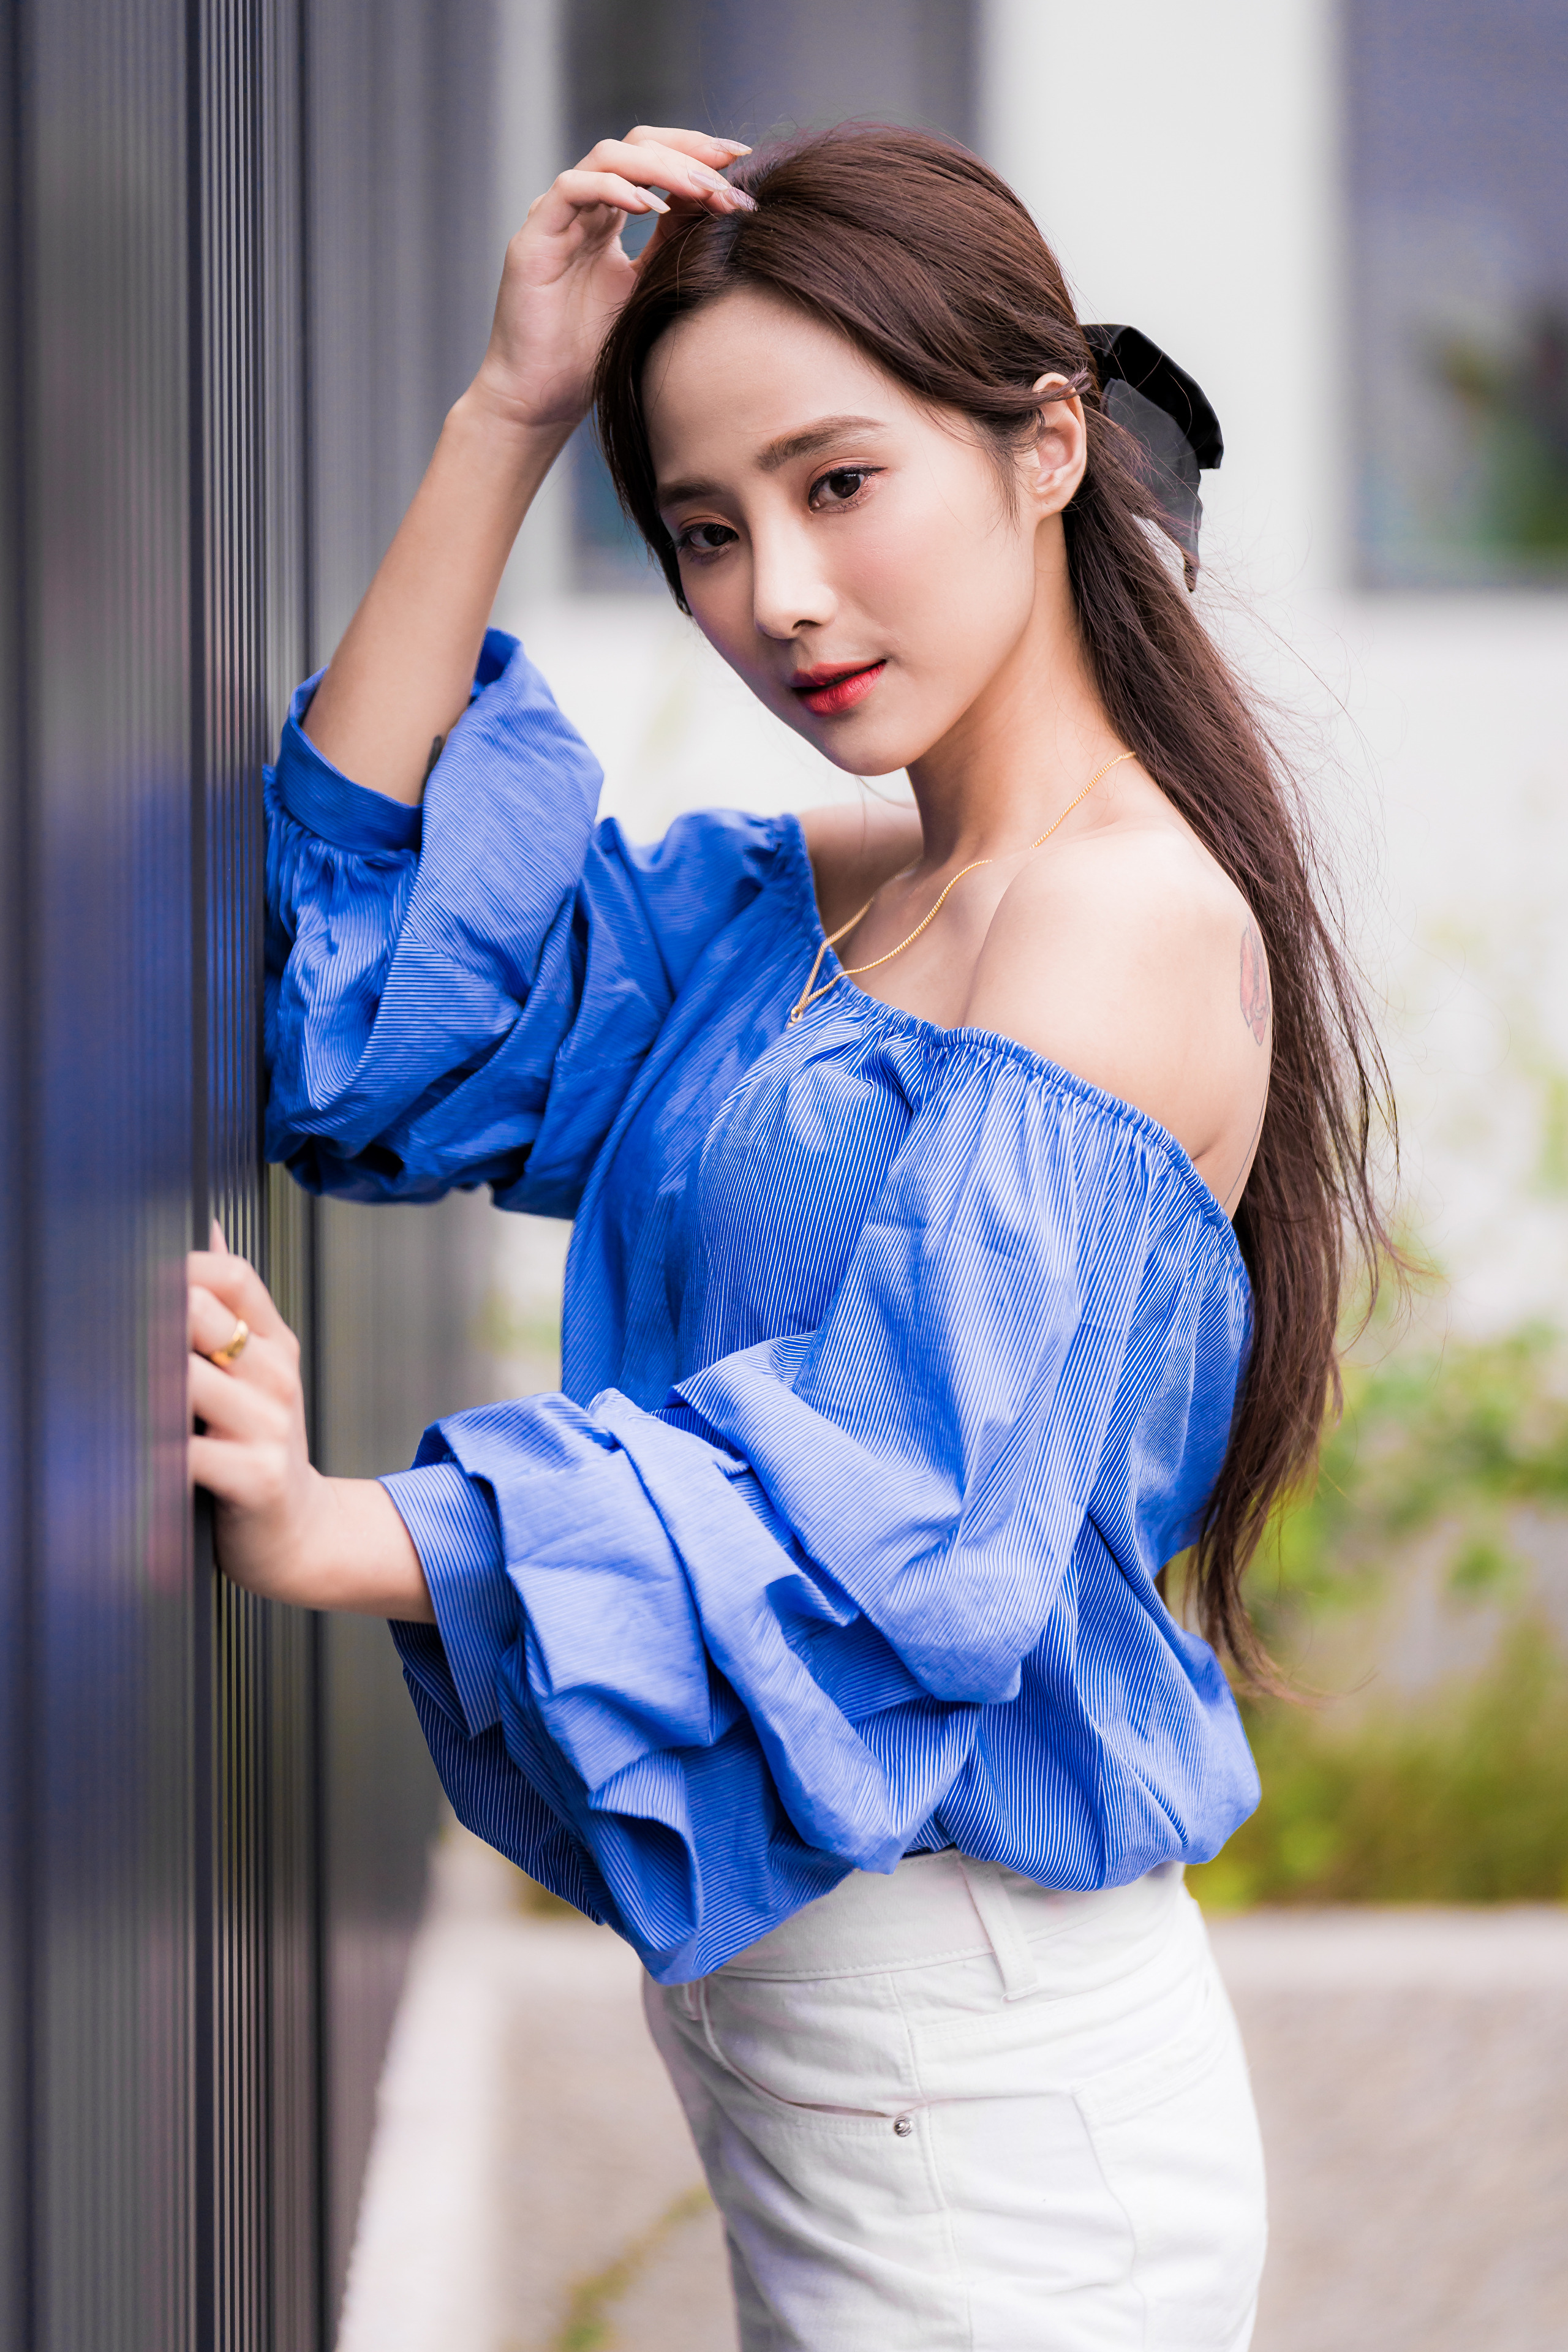 Bilder von Braune Haare Bluse Mädchens asiatisches Hand 2560x3840 für Handy Braunhaarige junge frau junge Frauen Asiaten Asiatische